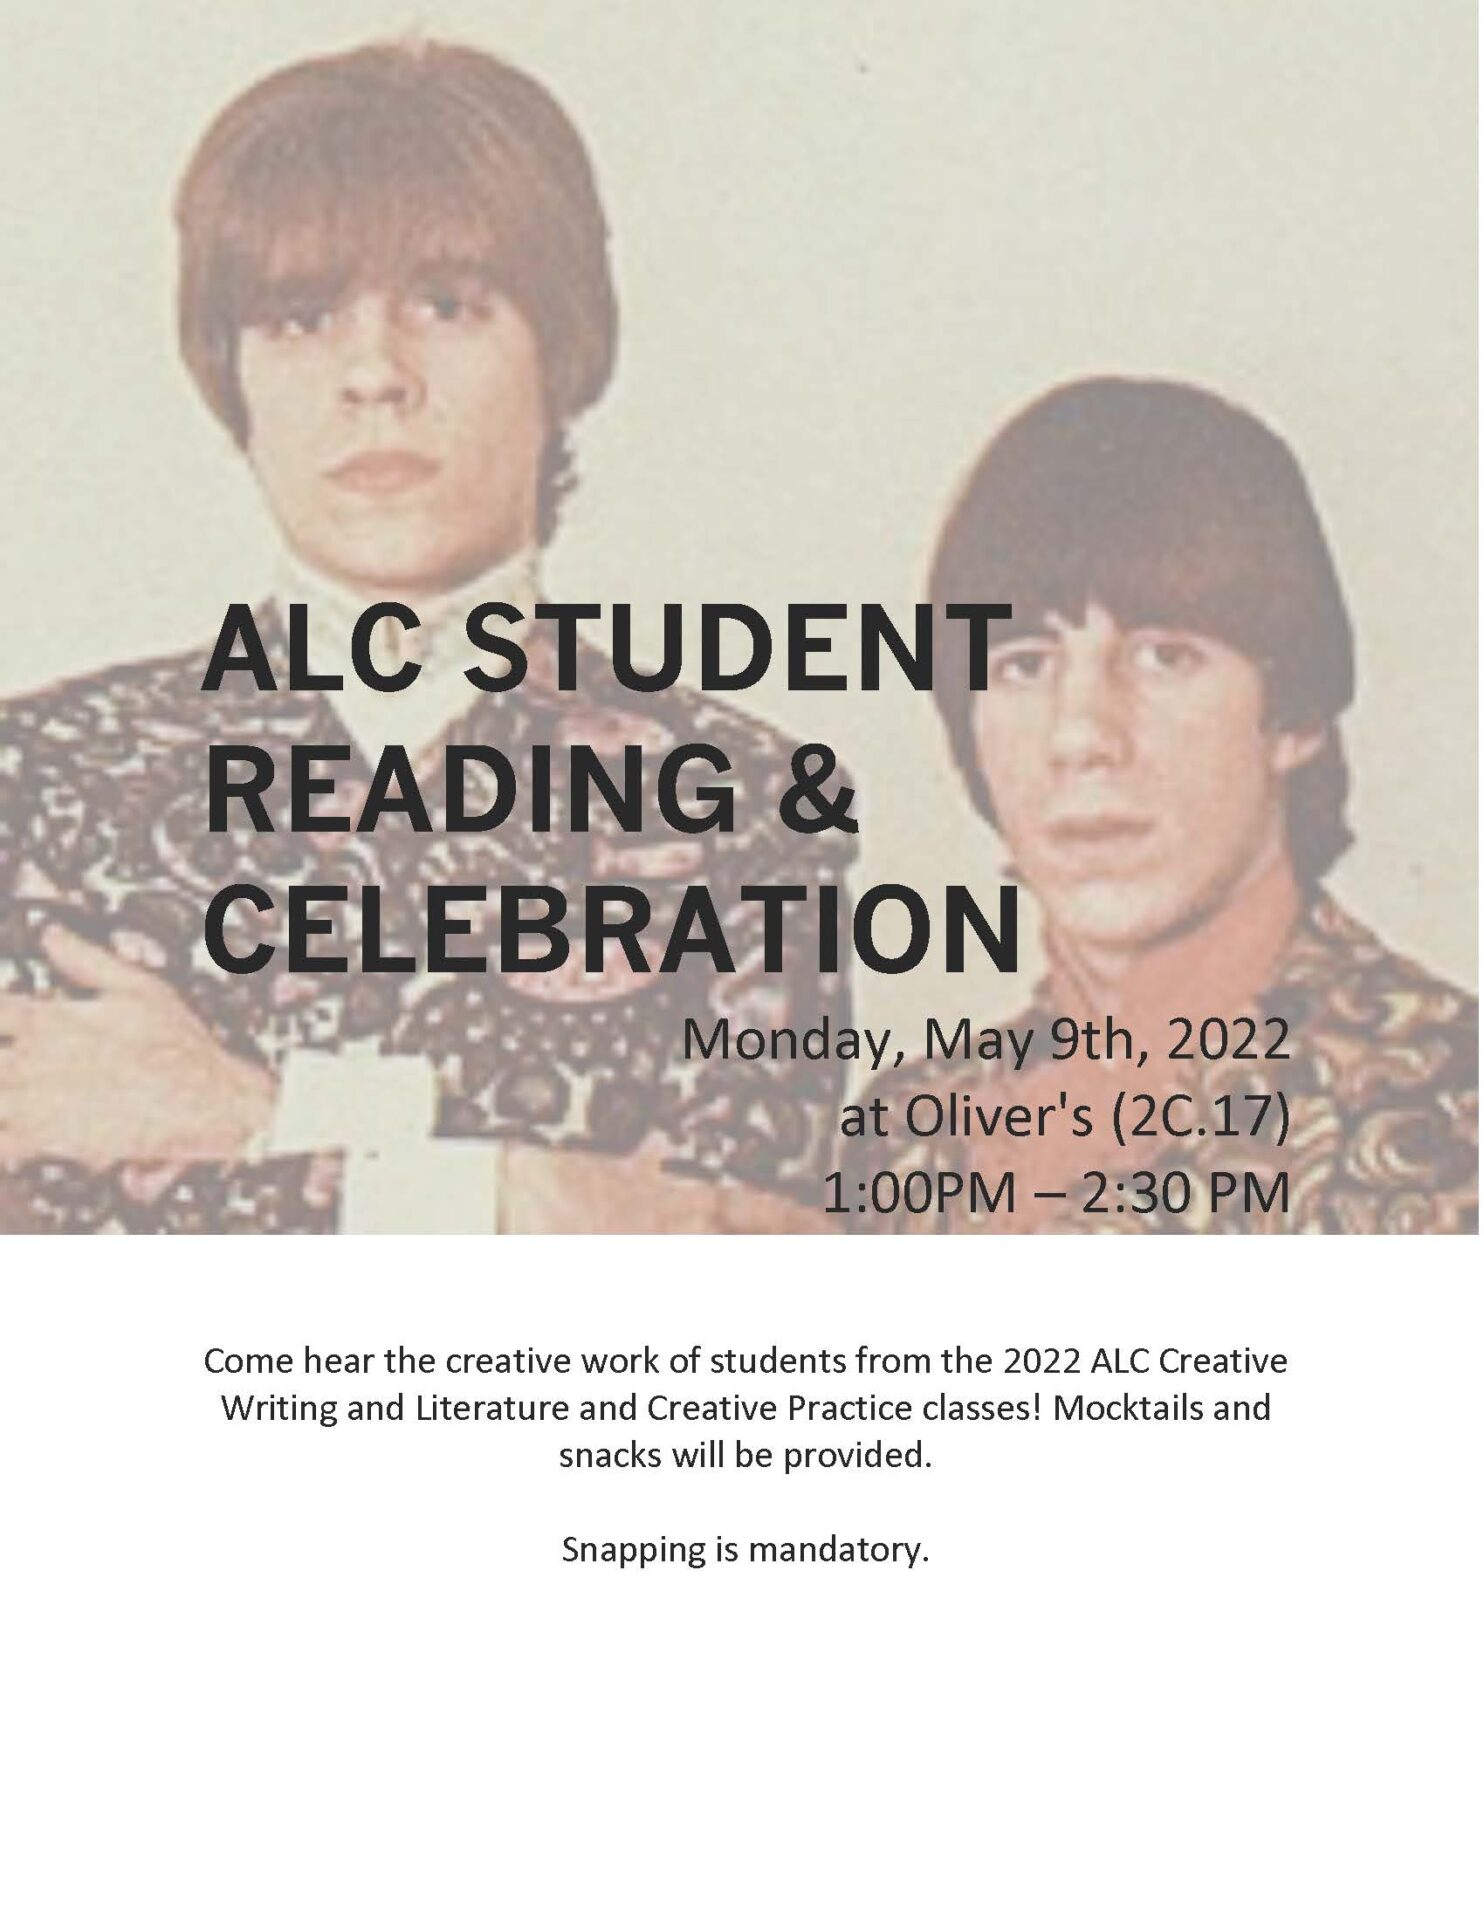 Affiche de la célébration de la lecture de l'ALC